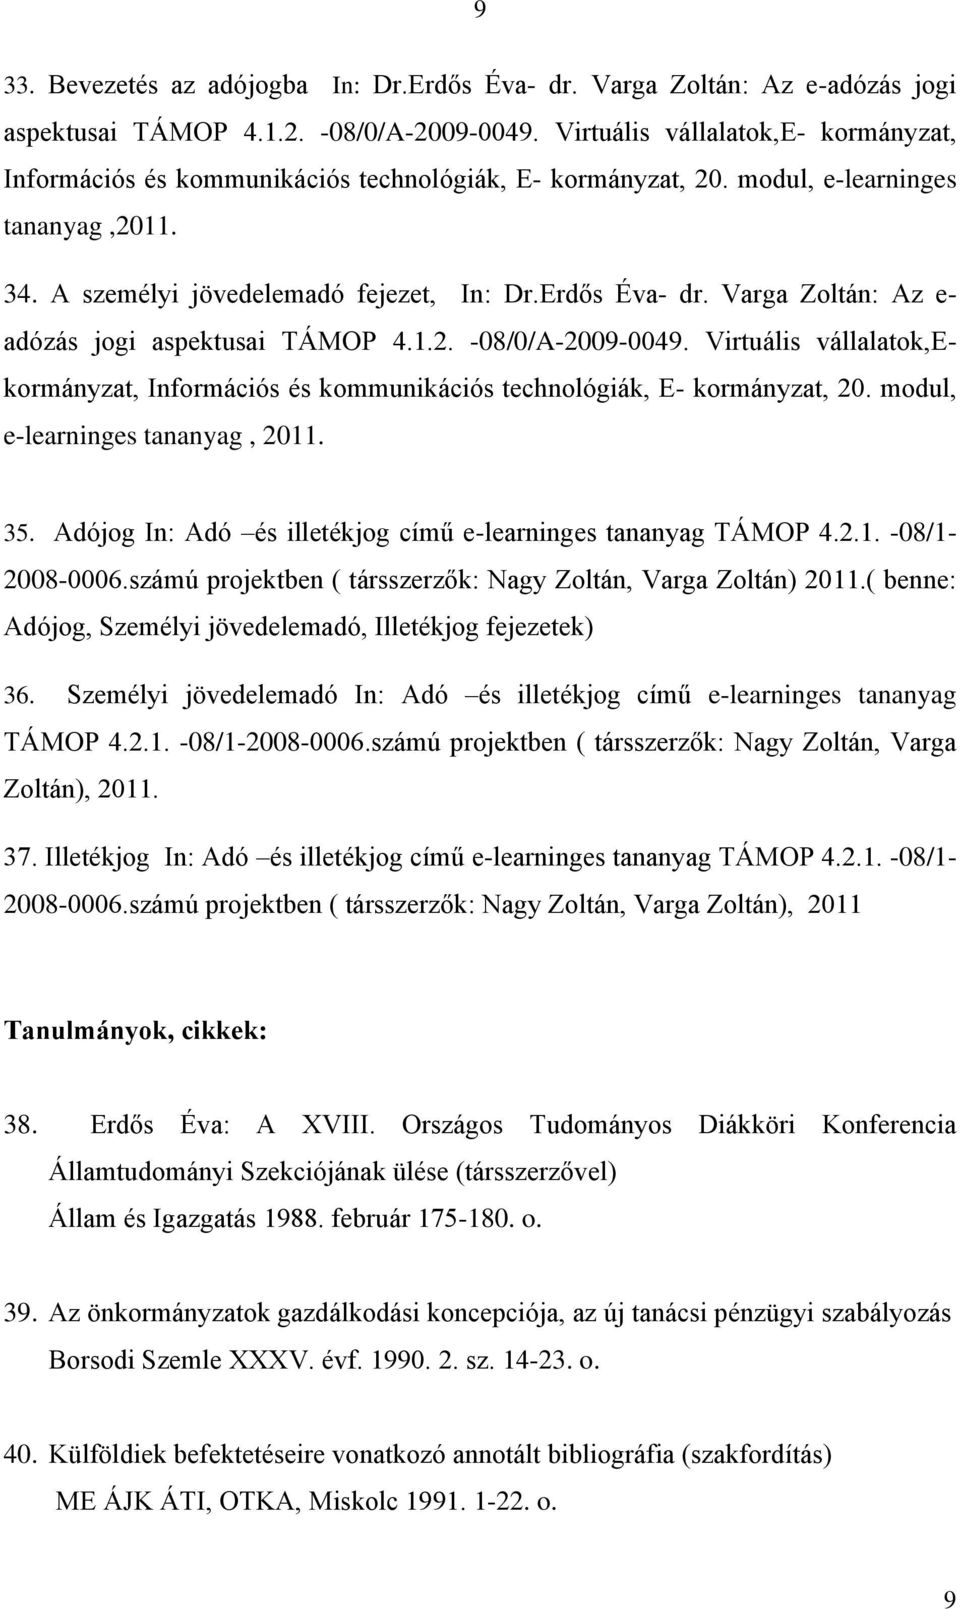 Varga Zoltán: Az e- adózás jogi aspektusai TÁMOP 4.1.2. -08/0/A-2009-0049. Virtuális vállalatok,ekormányzat, Információs és kommunikációs technológiák, E- kormányzat, 20.